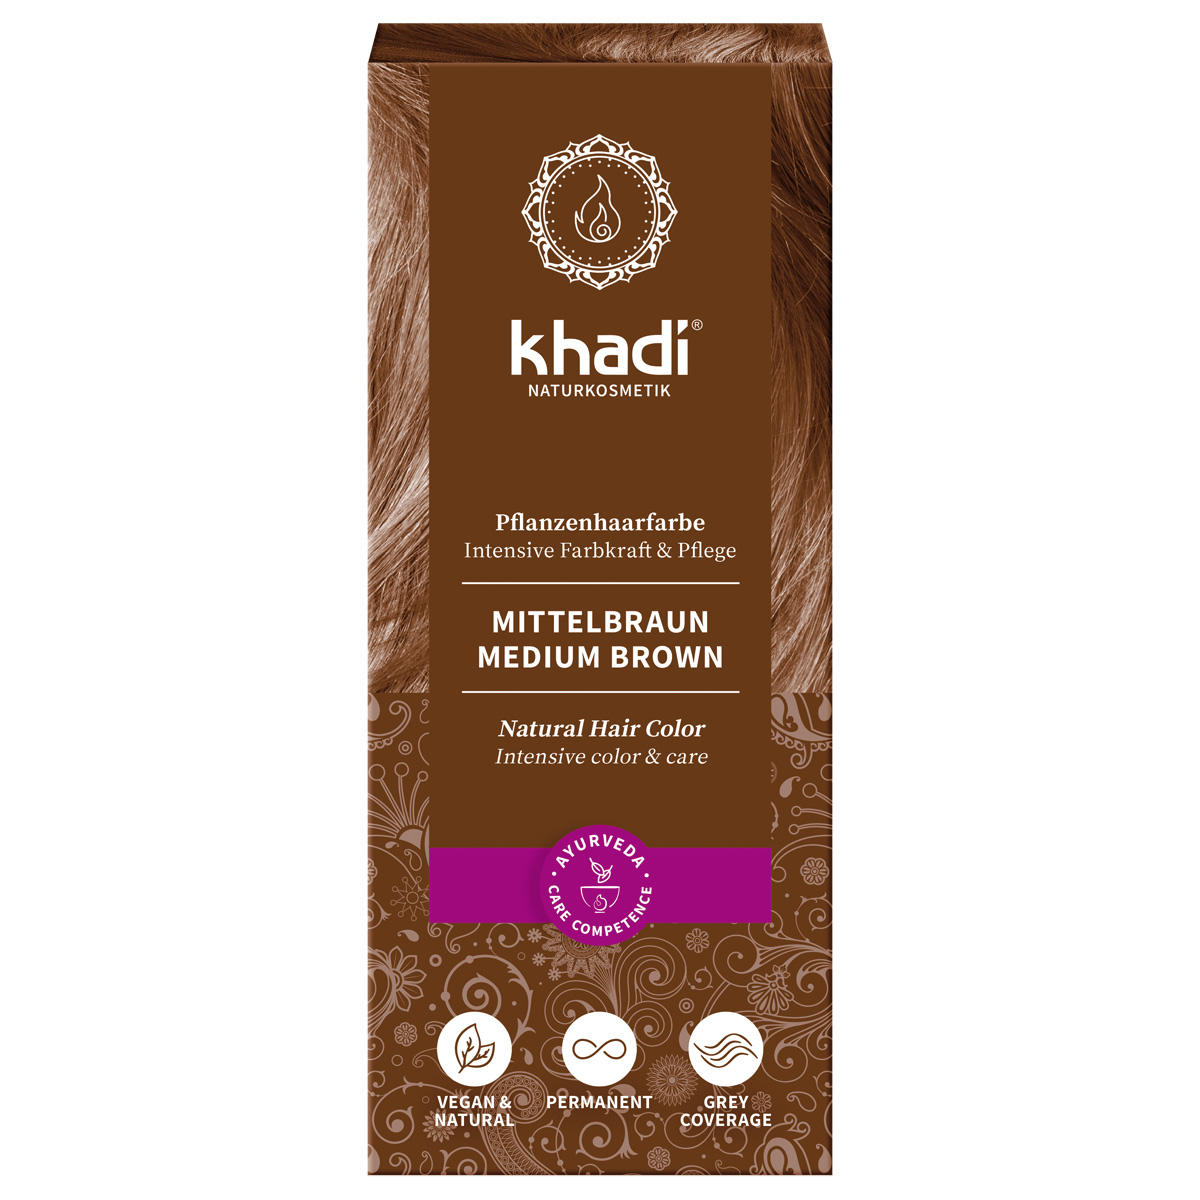 khadi Plant haarkleur medium bruin 100 g - 1